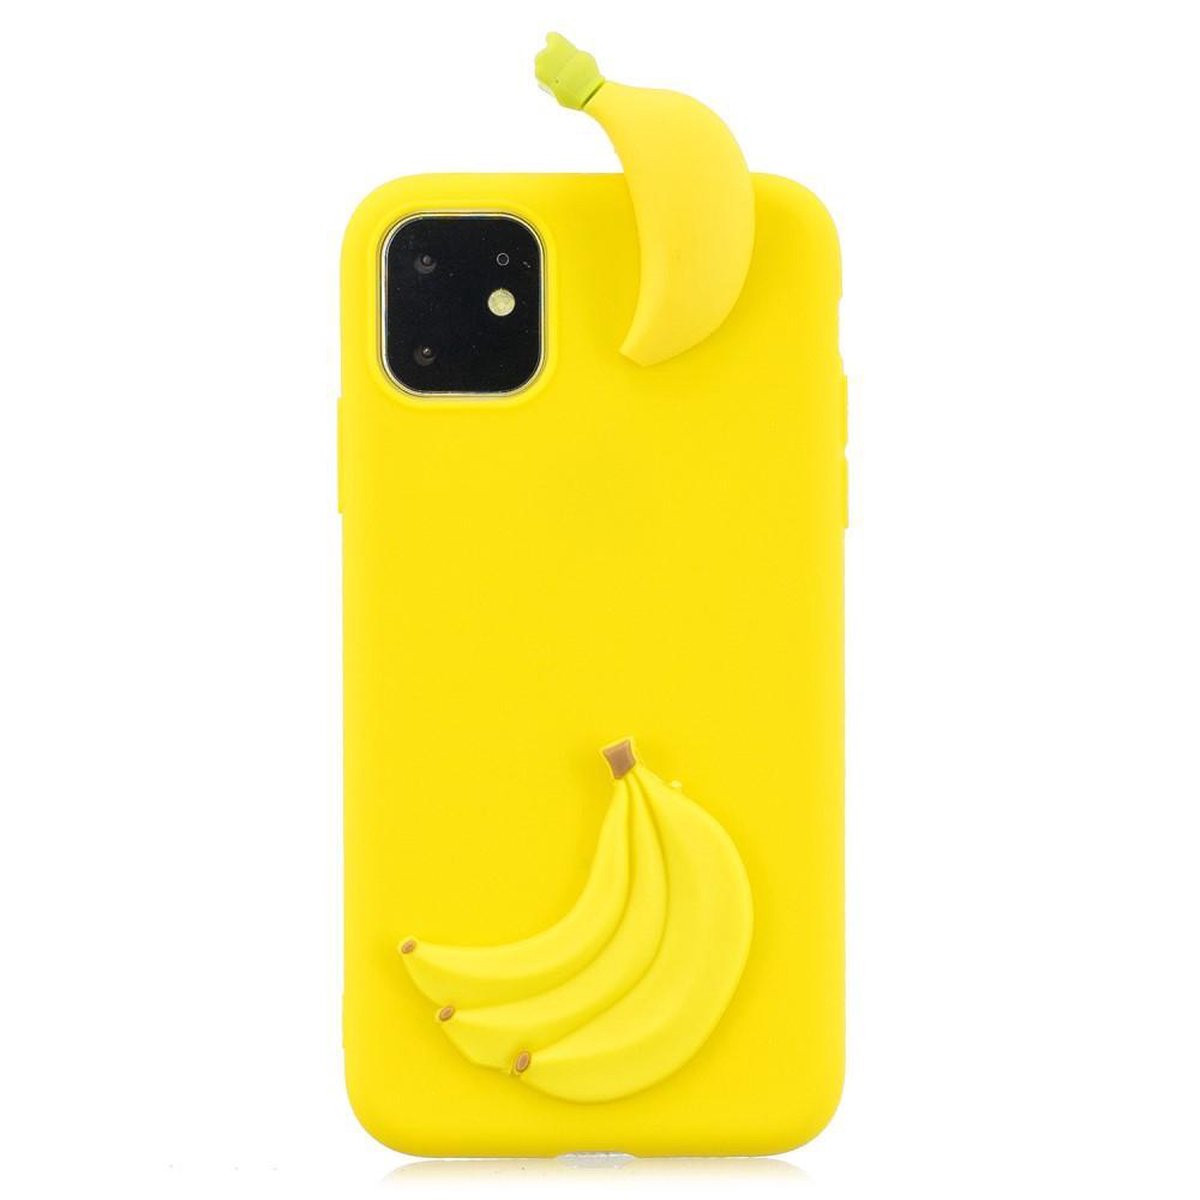 Speelse softcase met 3D bananen voor iPhone 11 Pro 5.8 inch - Geel